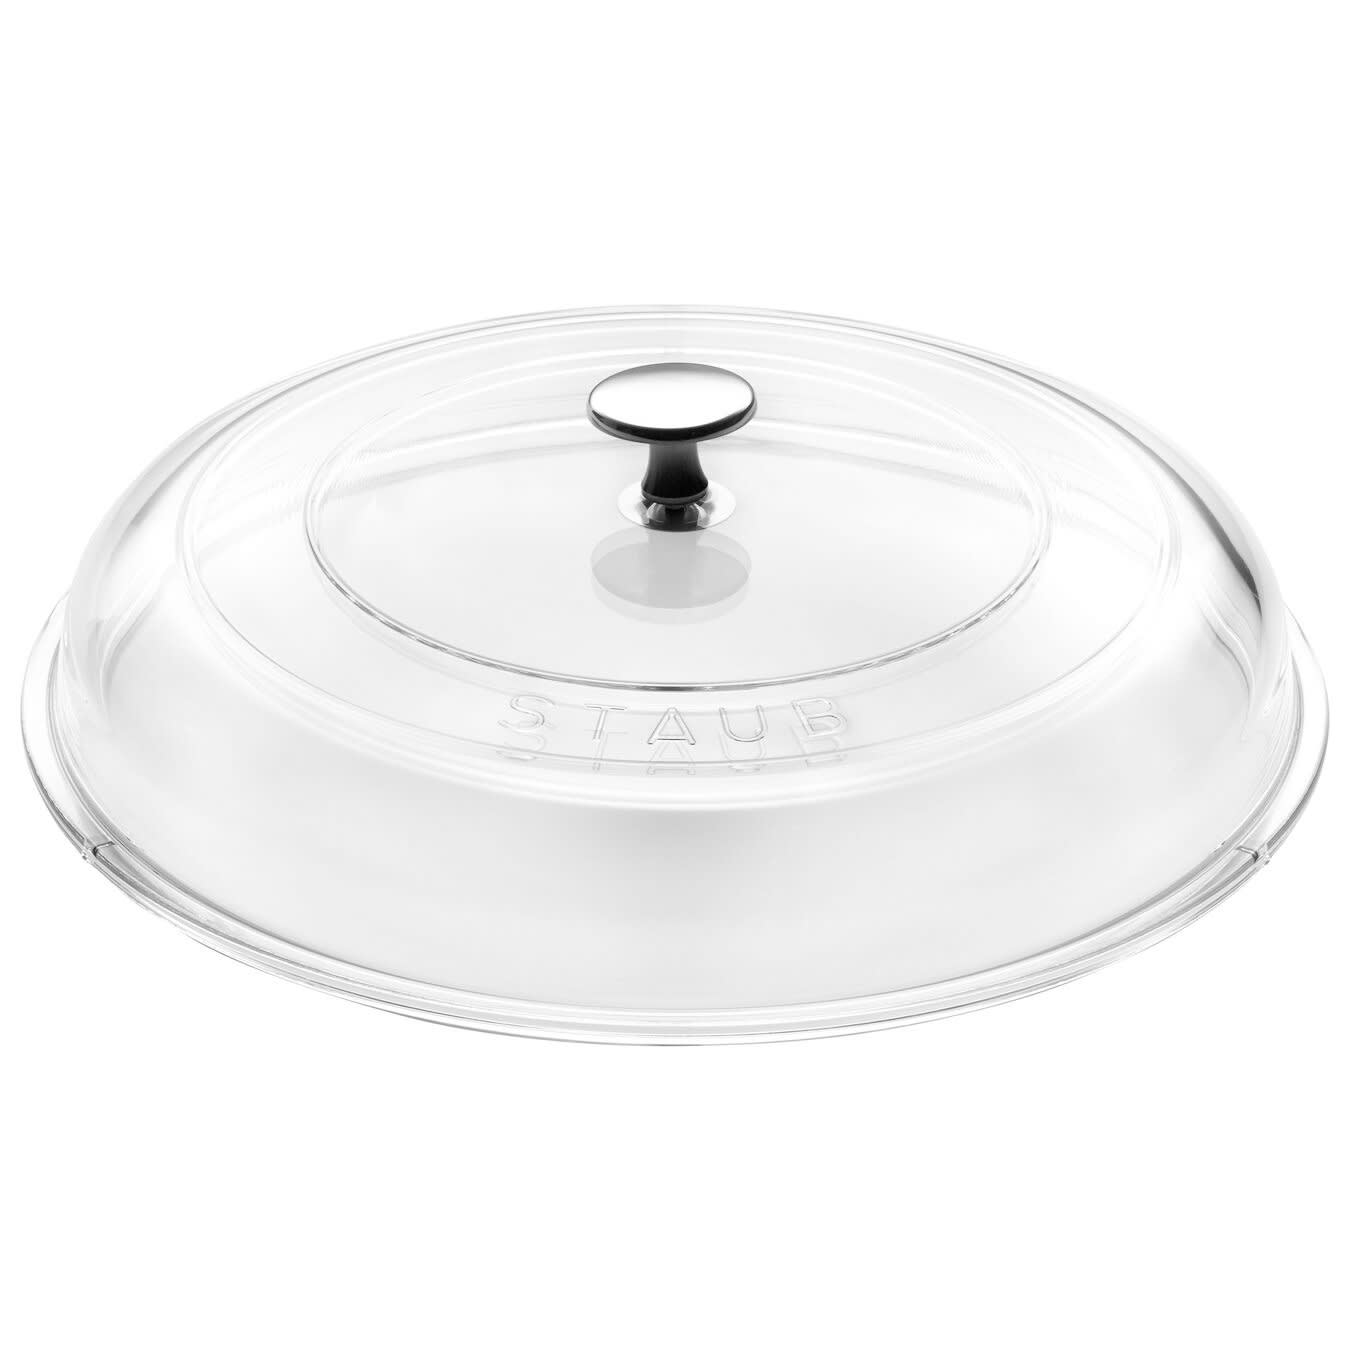 Staub Small Wok with glass lid diam.12 inch